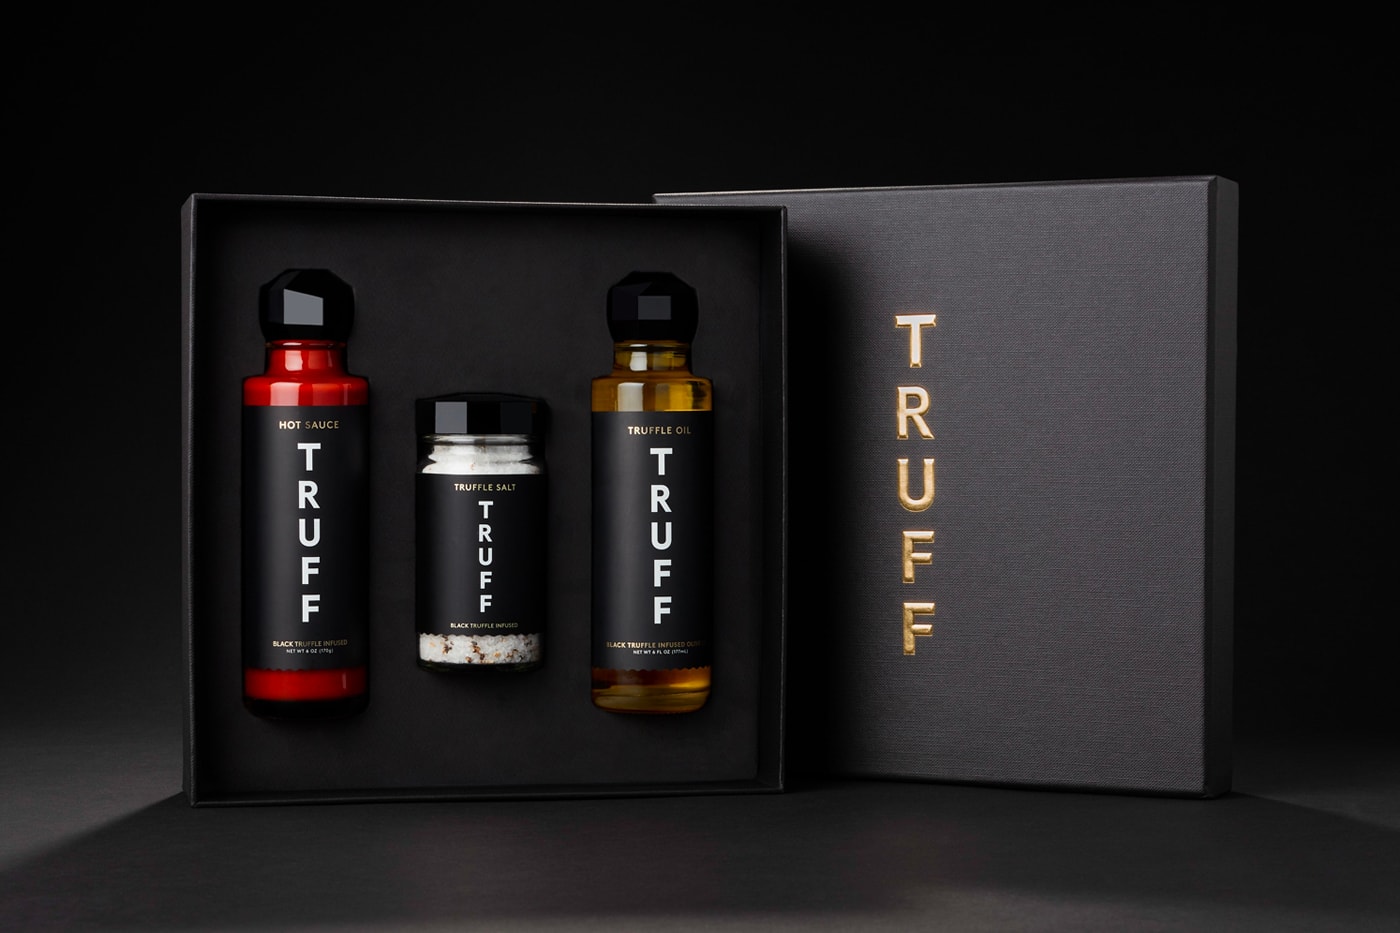 TRUFF Black Truffle Salt Release Info Taste Review 